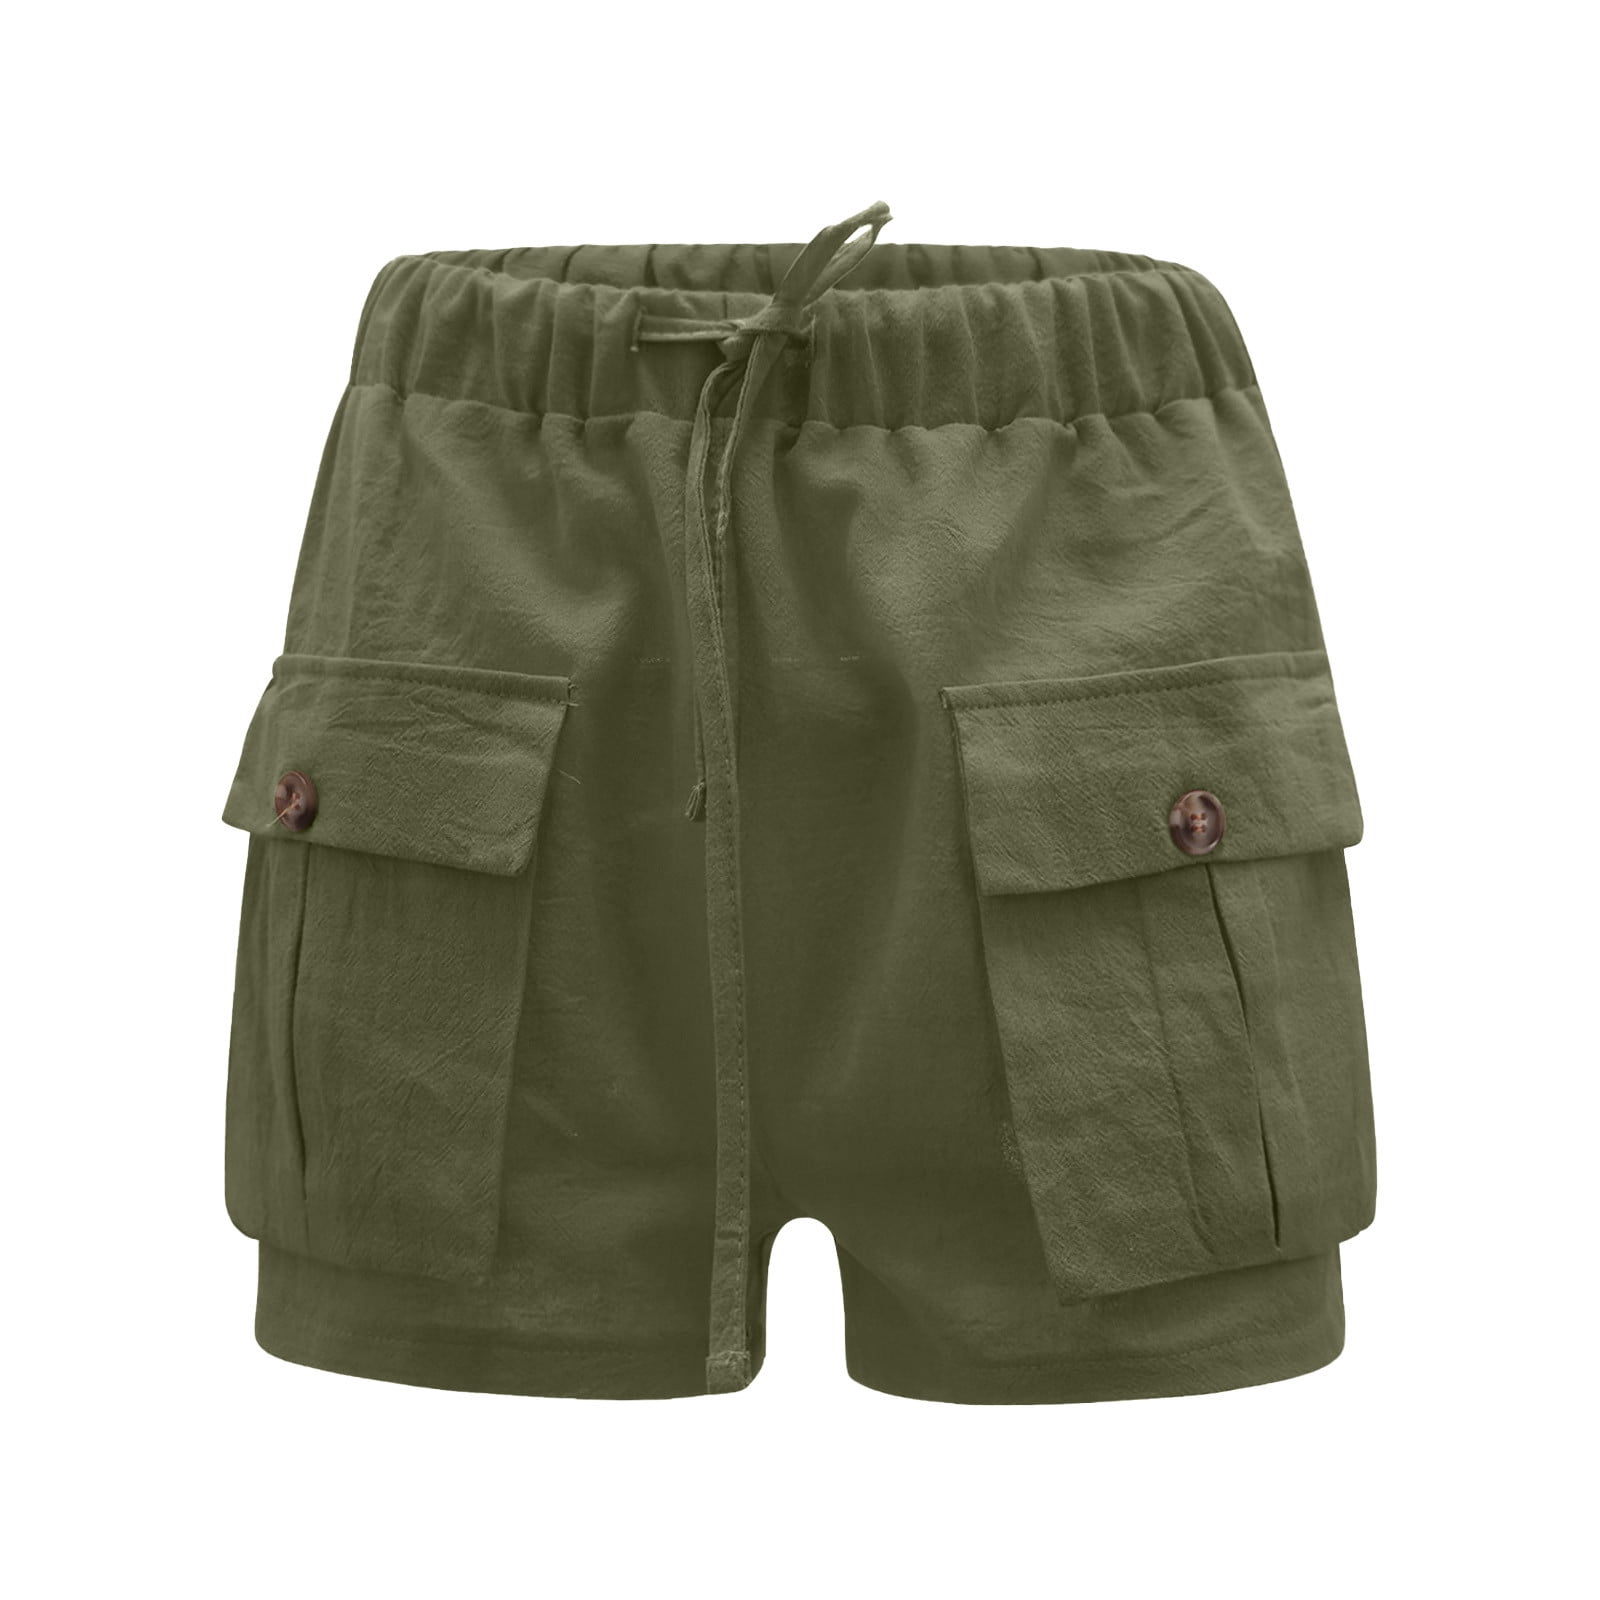 Zodggu Womens Army Green Plus Size Shorts Fashion Women's Cargo